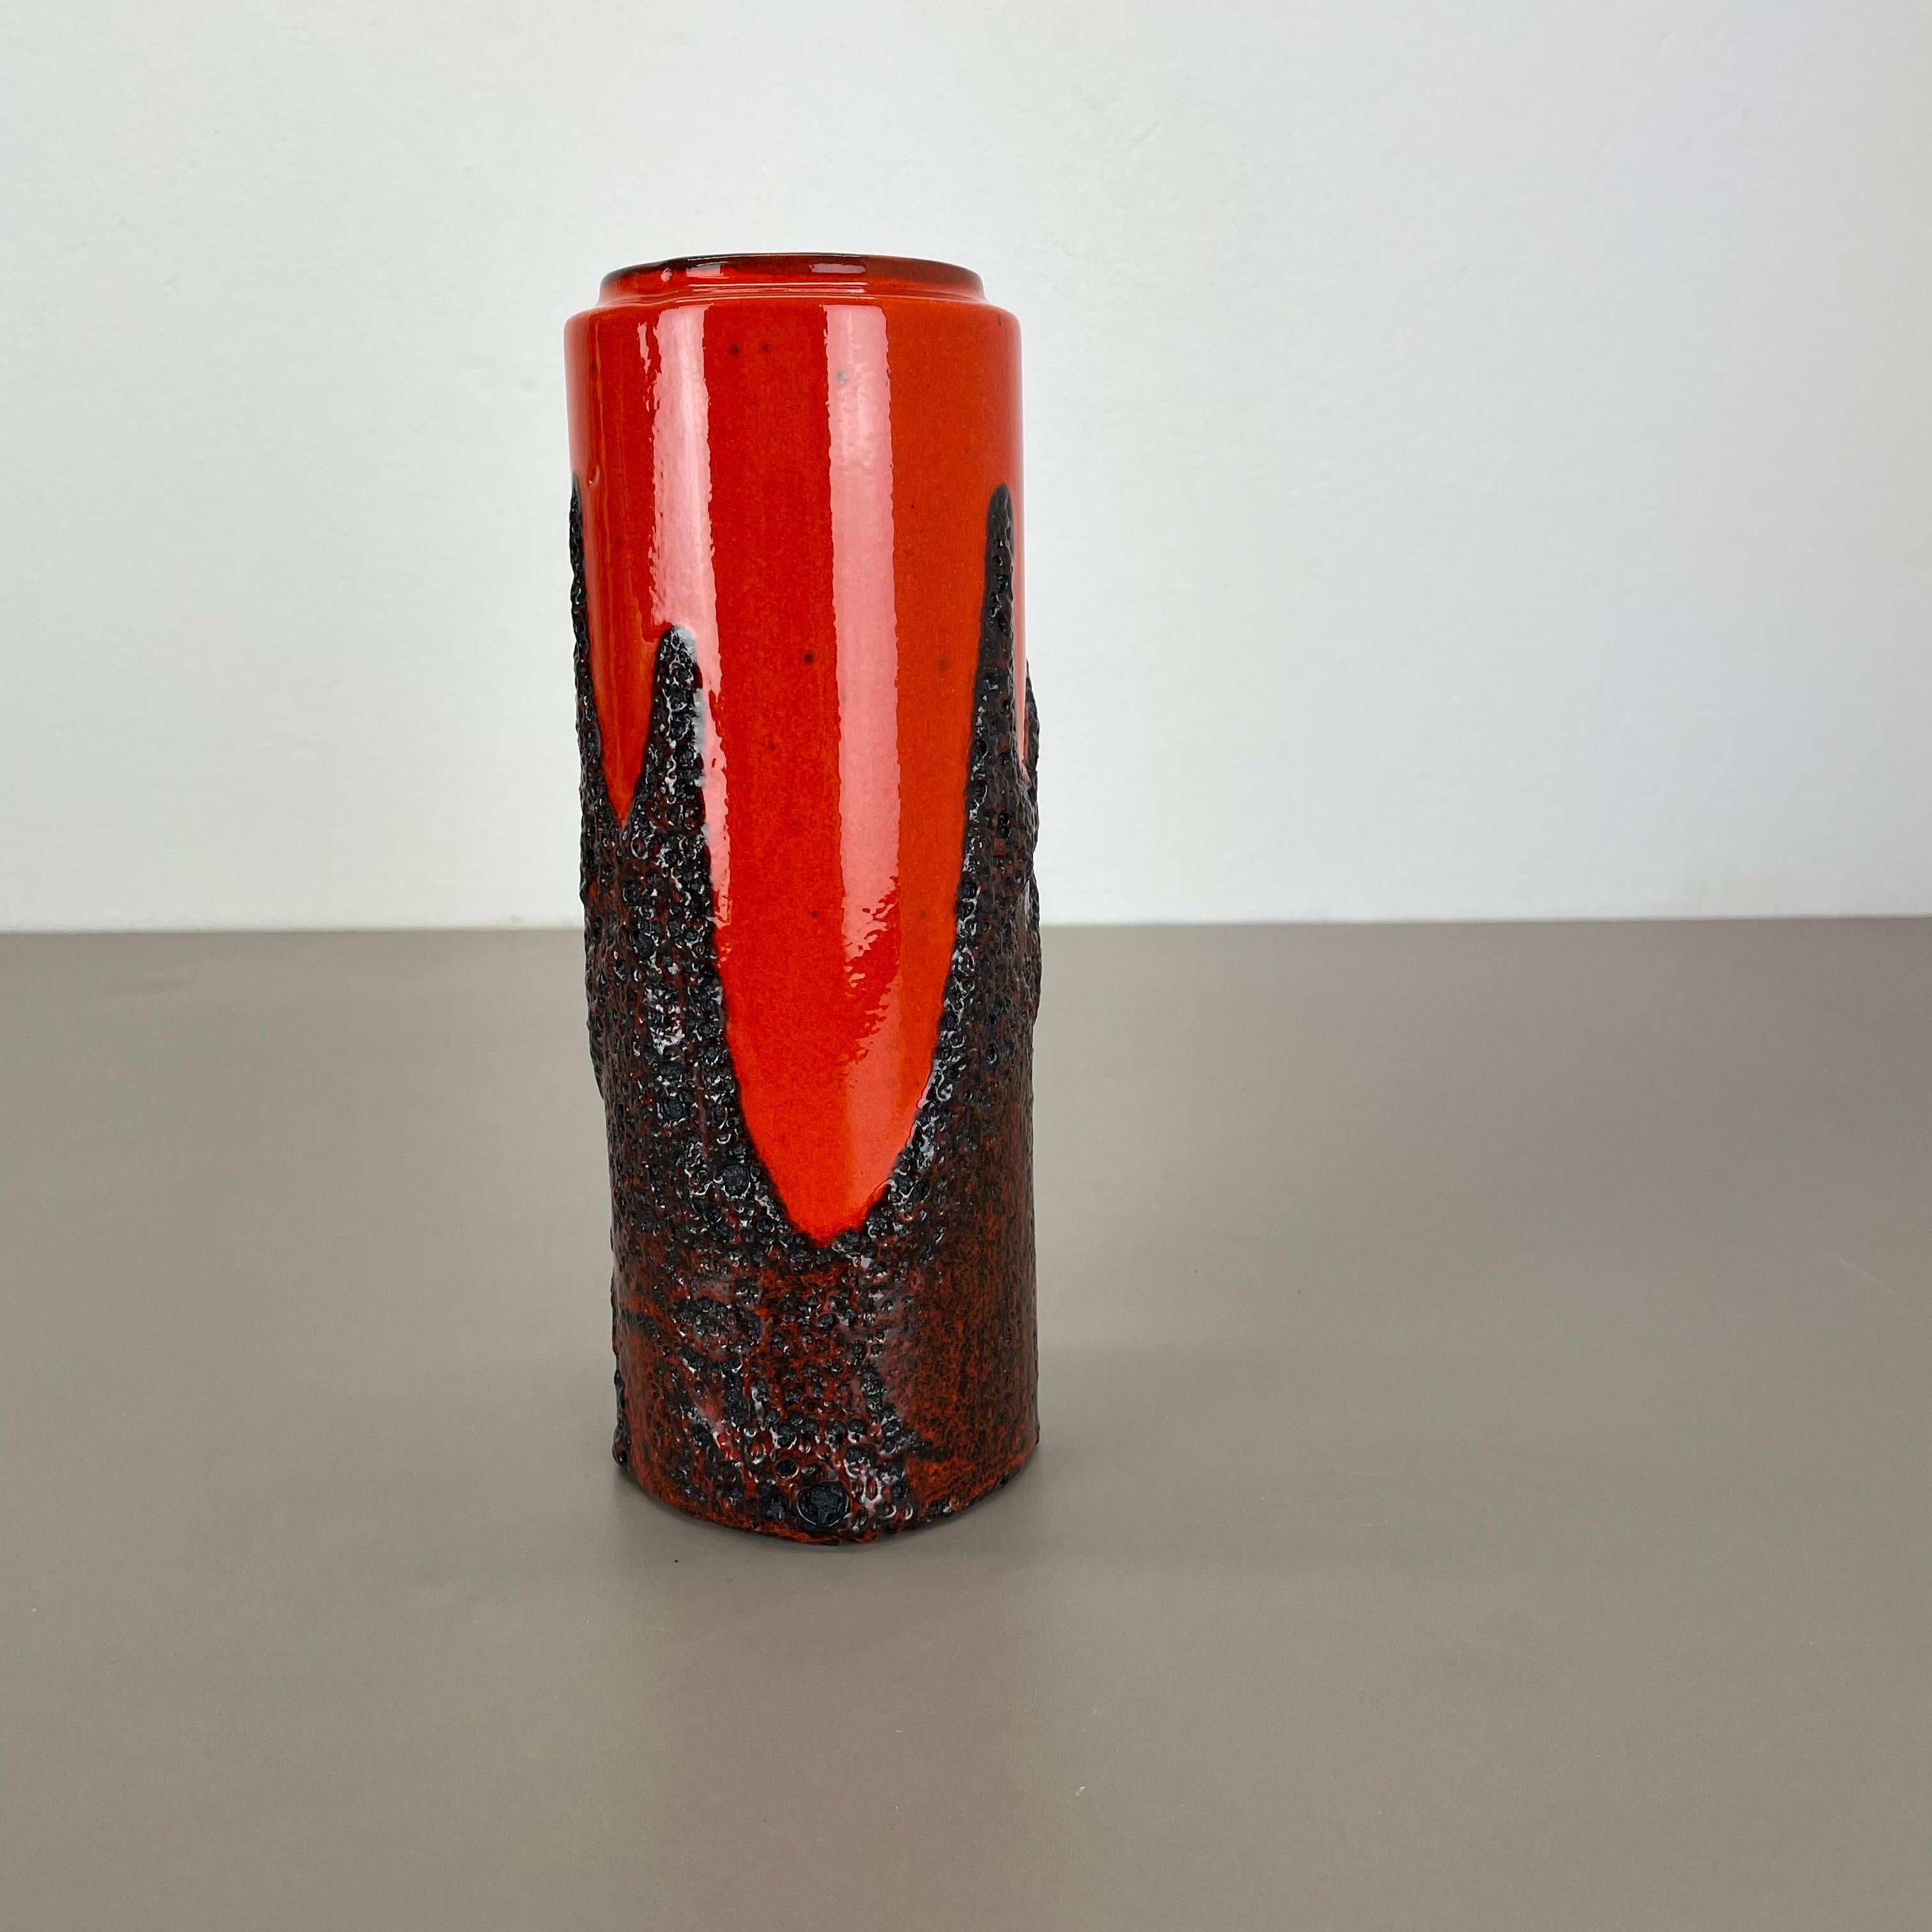 Artikel:

Fette Lavakunstvase, schwere brutalistische Glasur


Produzent:

Scheurich, Deutschland



Jahrzehnt:

1970s




Diese originelle Vintage-Vase wurde in den 1970er Jahren in Deutschland hergestellt. Sie ist aus Keramik in fetter Lava-Optik